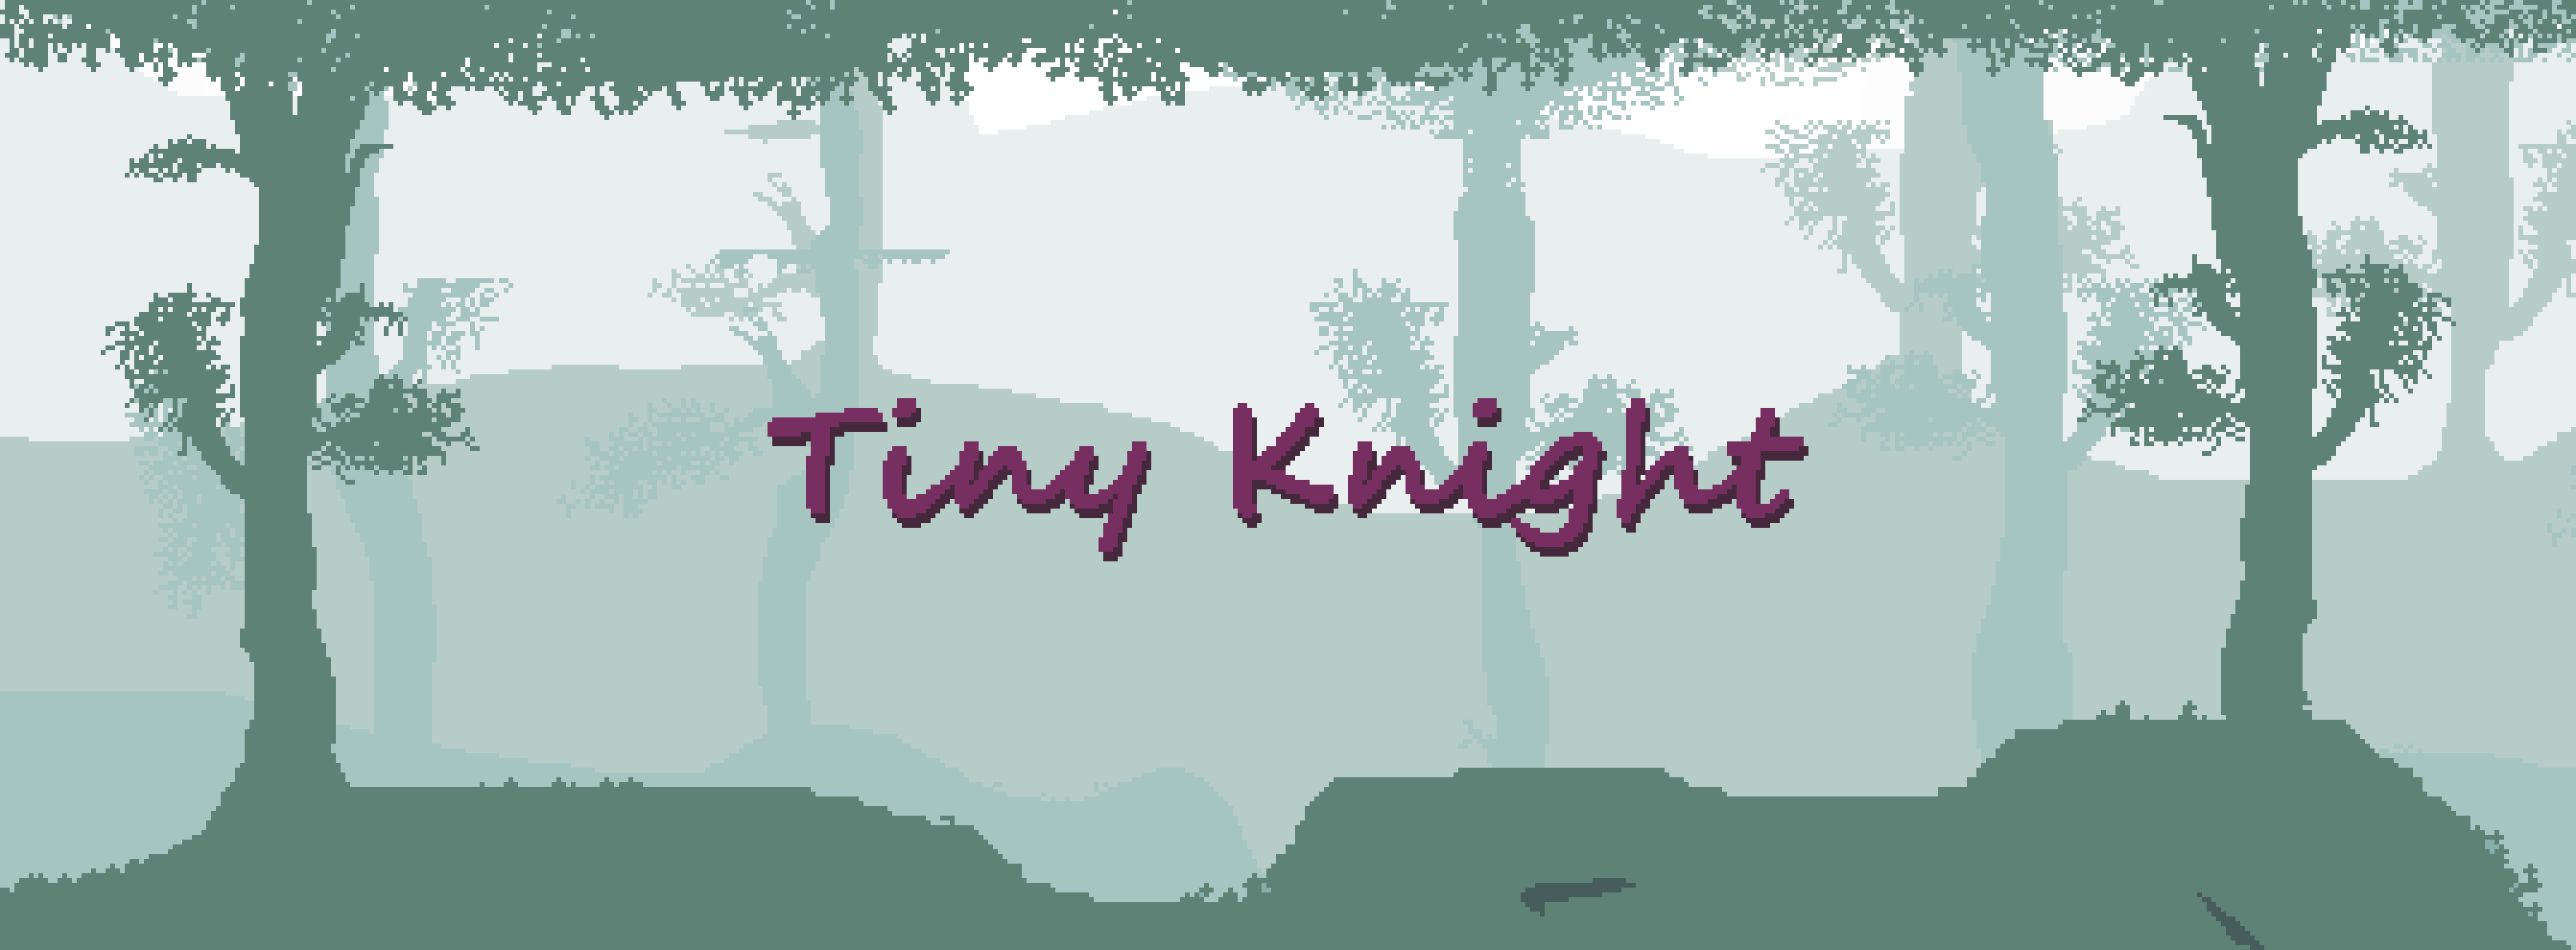 Tiny Knight (Game Mockup Jam)